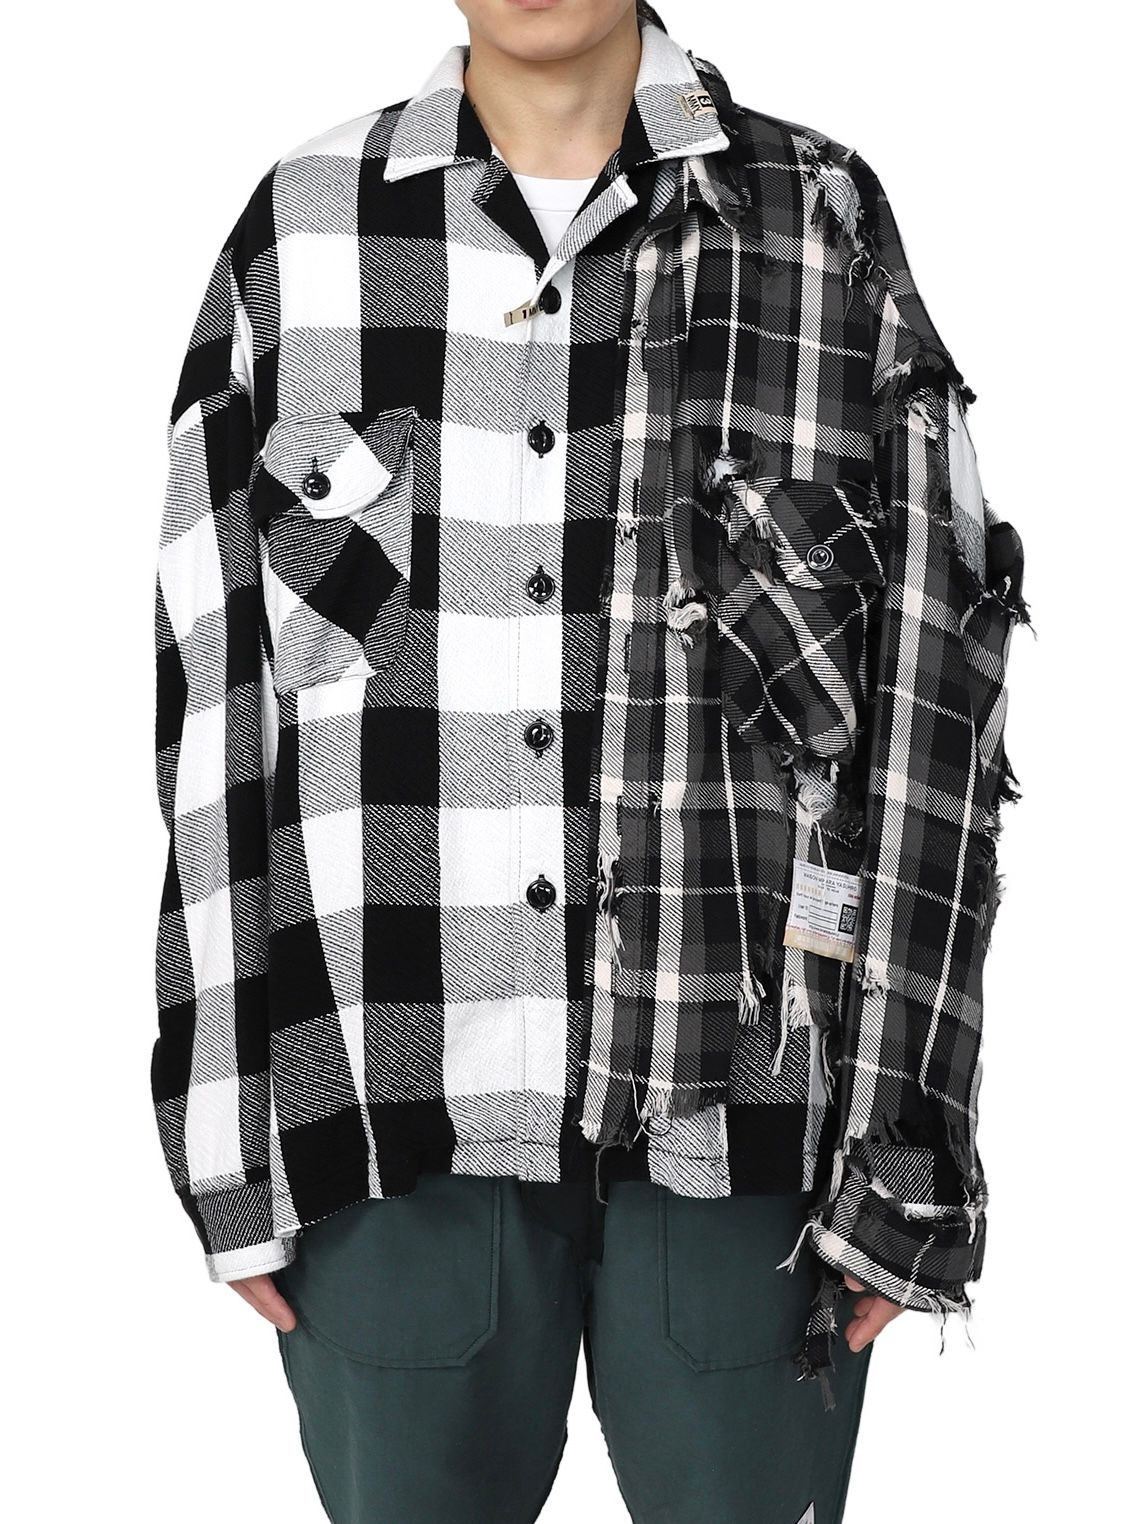 オーバーサイズ ドッキング チェックシャツ / Single Draped Check Shirt / ブラック - 44(S) - ブラック